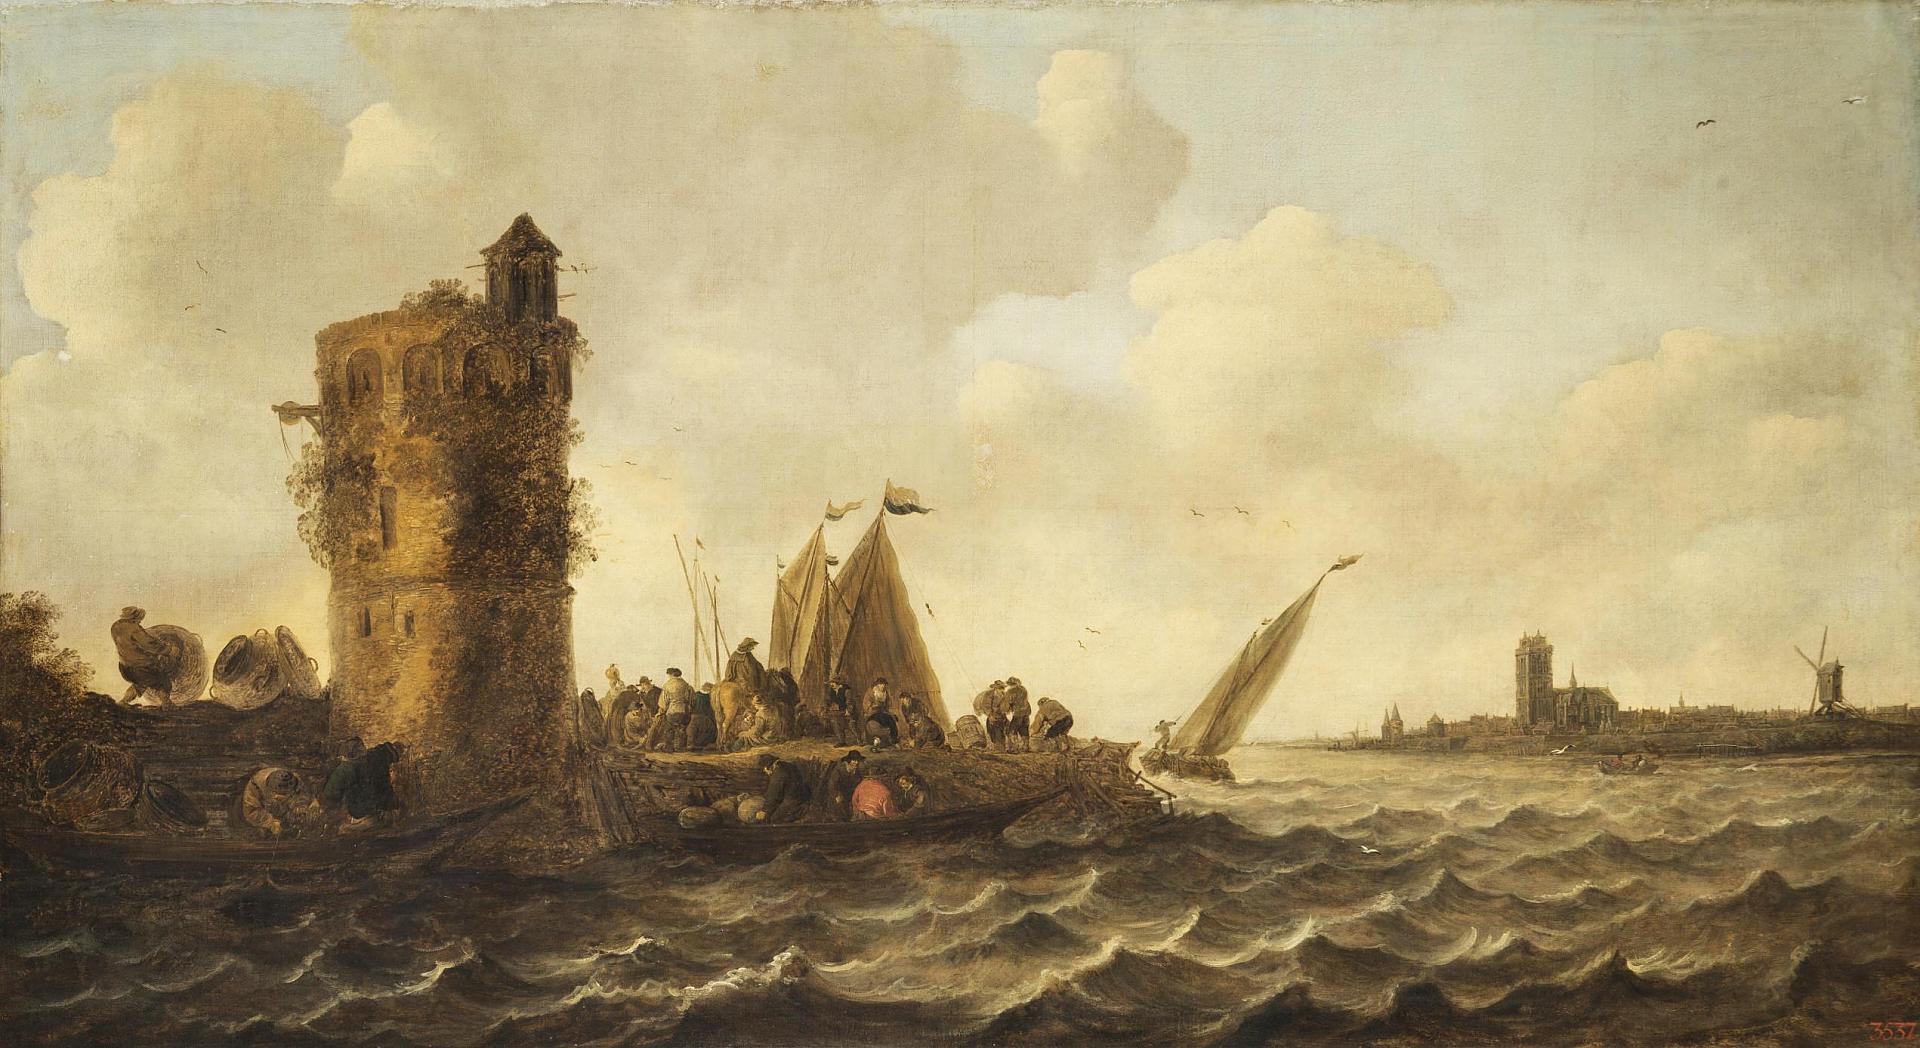 A View on the Maas near Dordrecht by Jan van Goyen